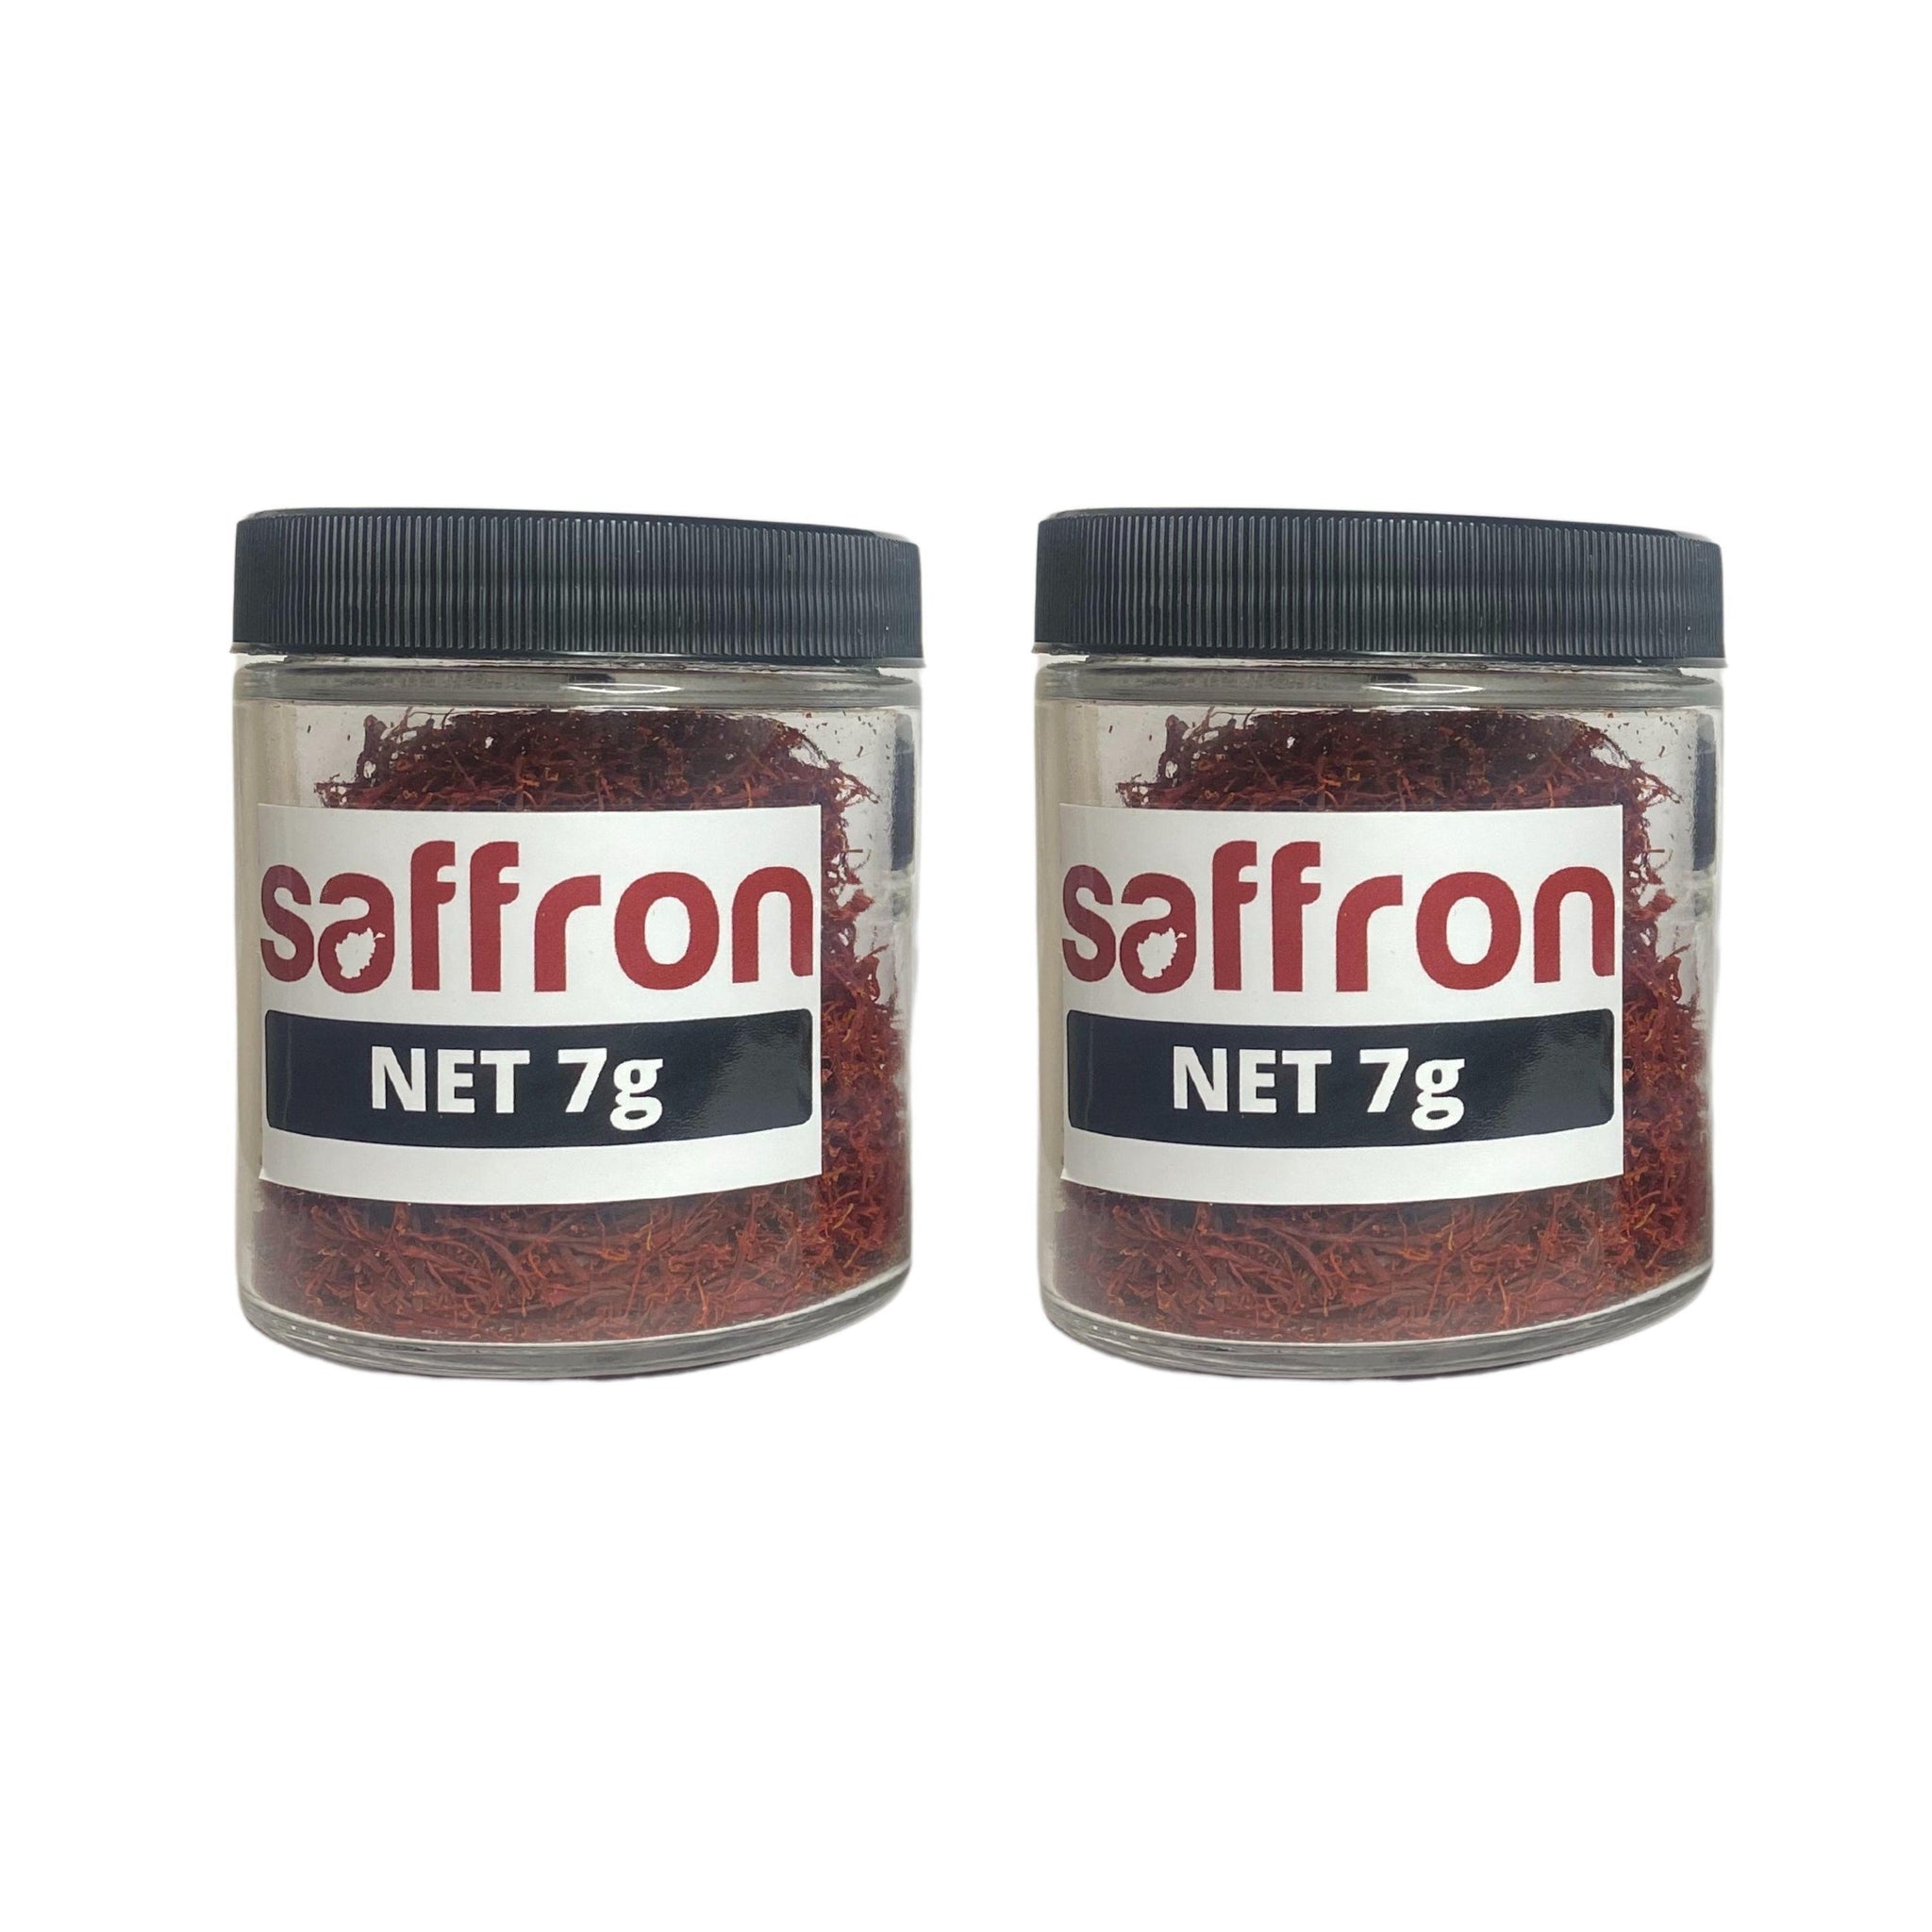 Saffron 14 Grams - Afghan Saffron Co. saffron spice from Afghanistan h